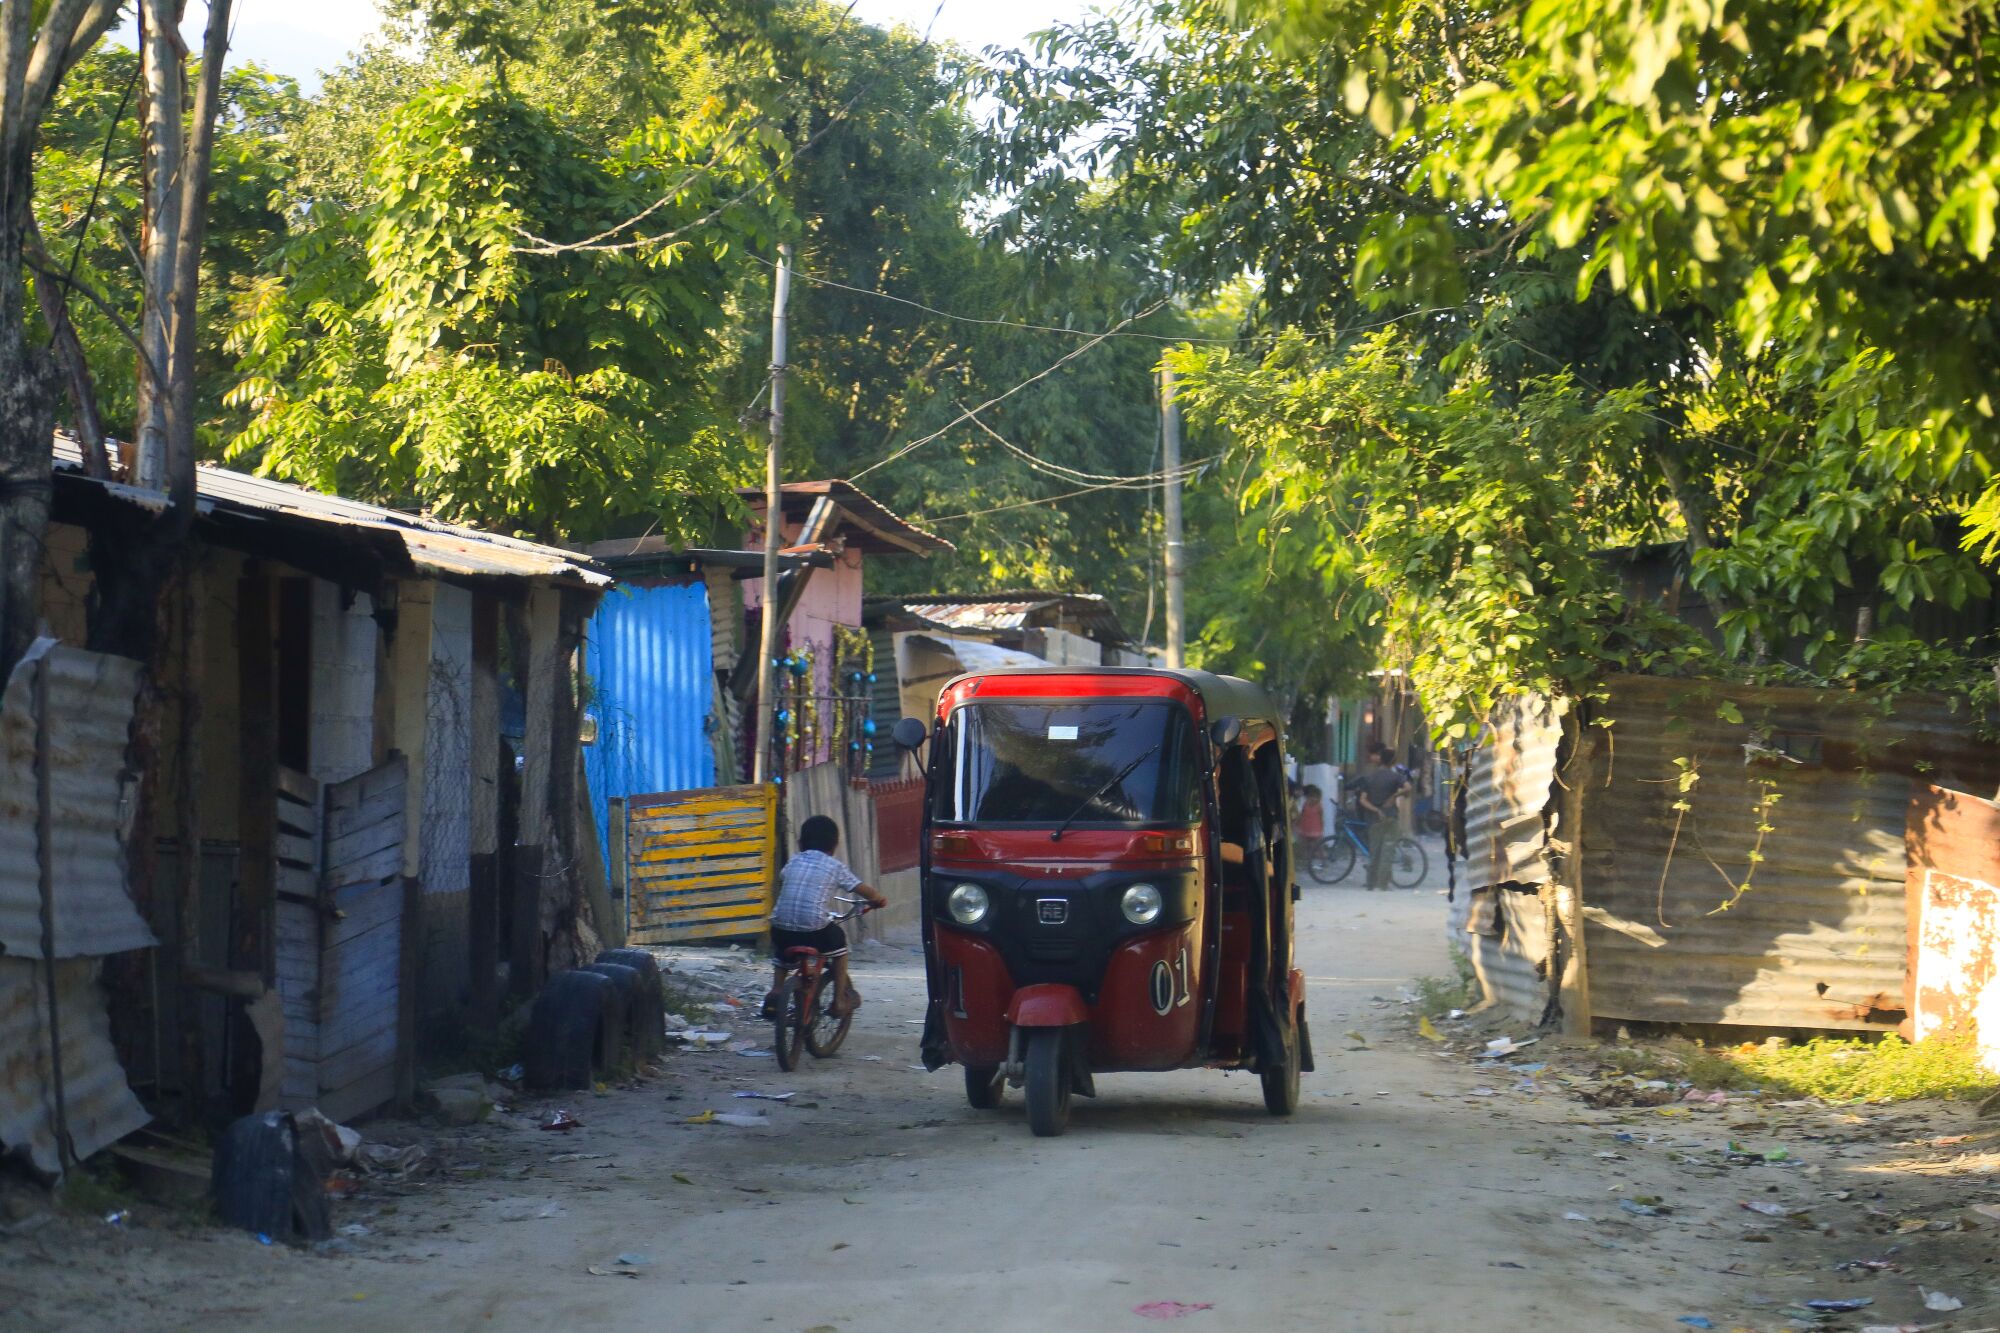 A mototaxi passes through a neighborhood in Honduras